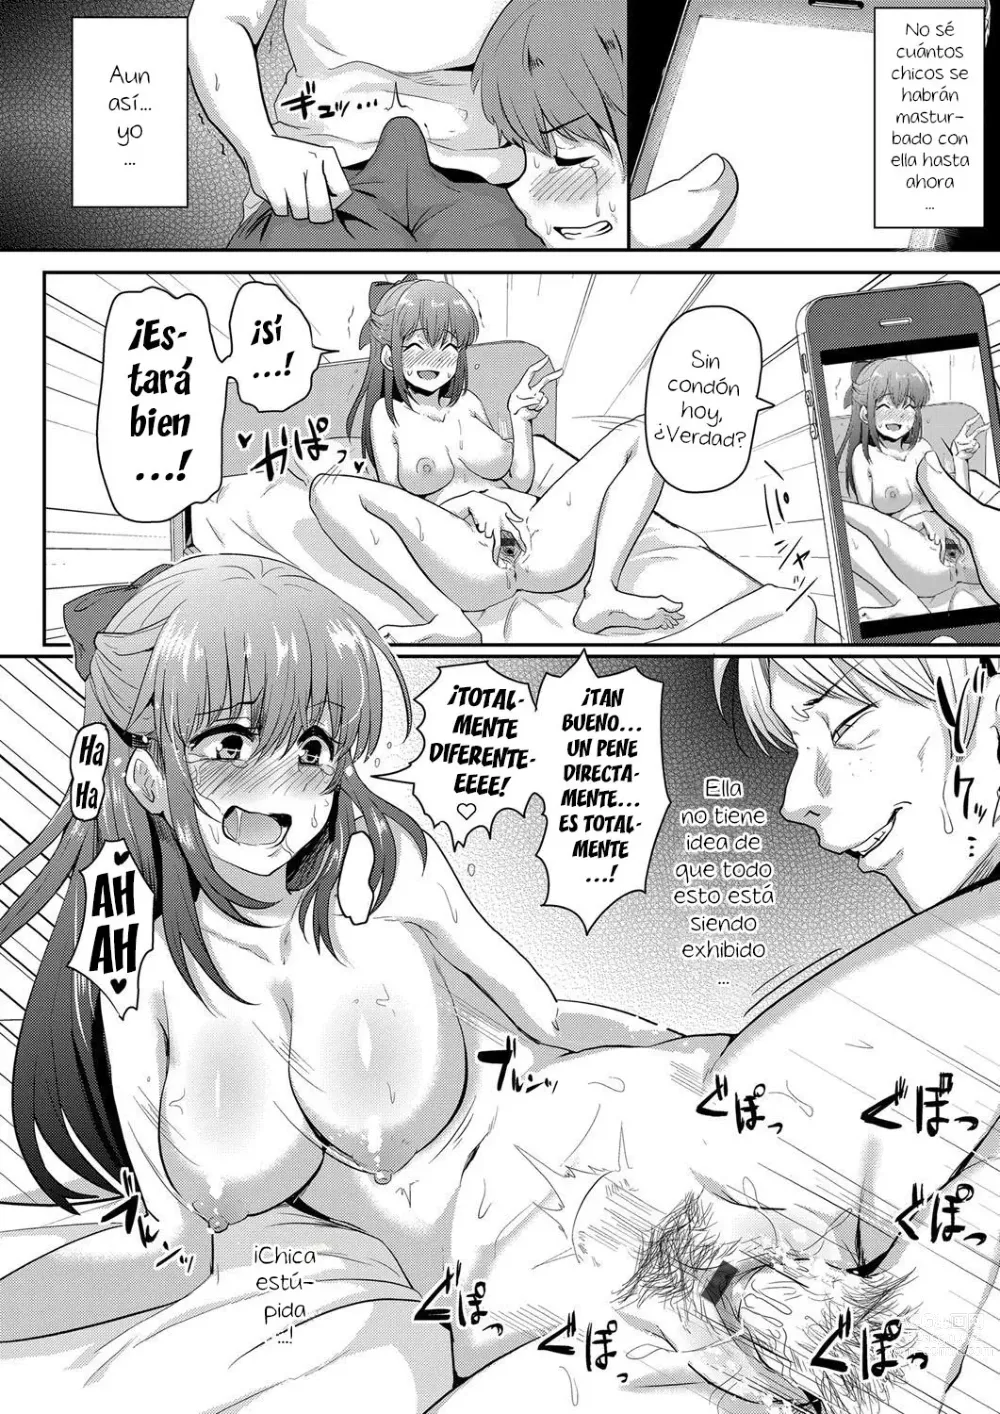 Page 14 of manga Sarasareta Hatsukoi no Hito